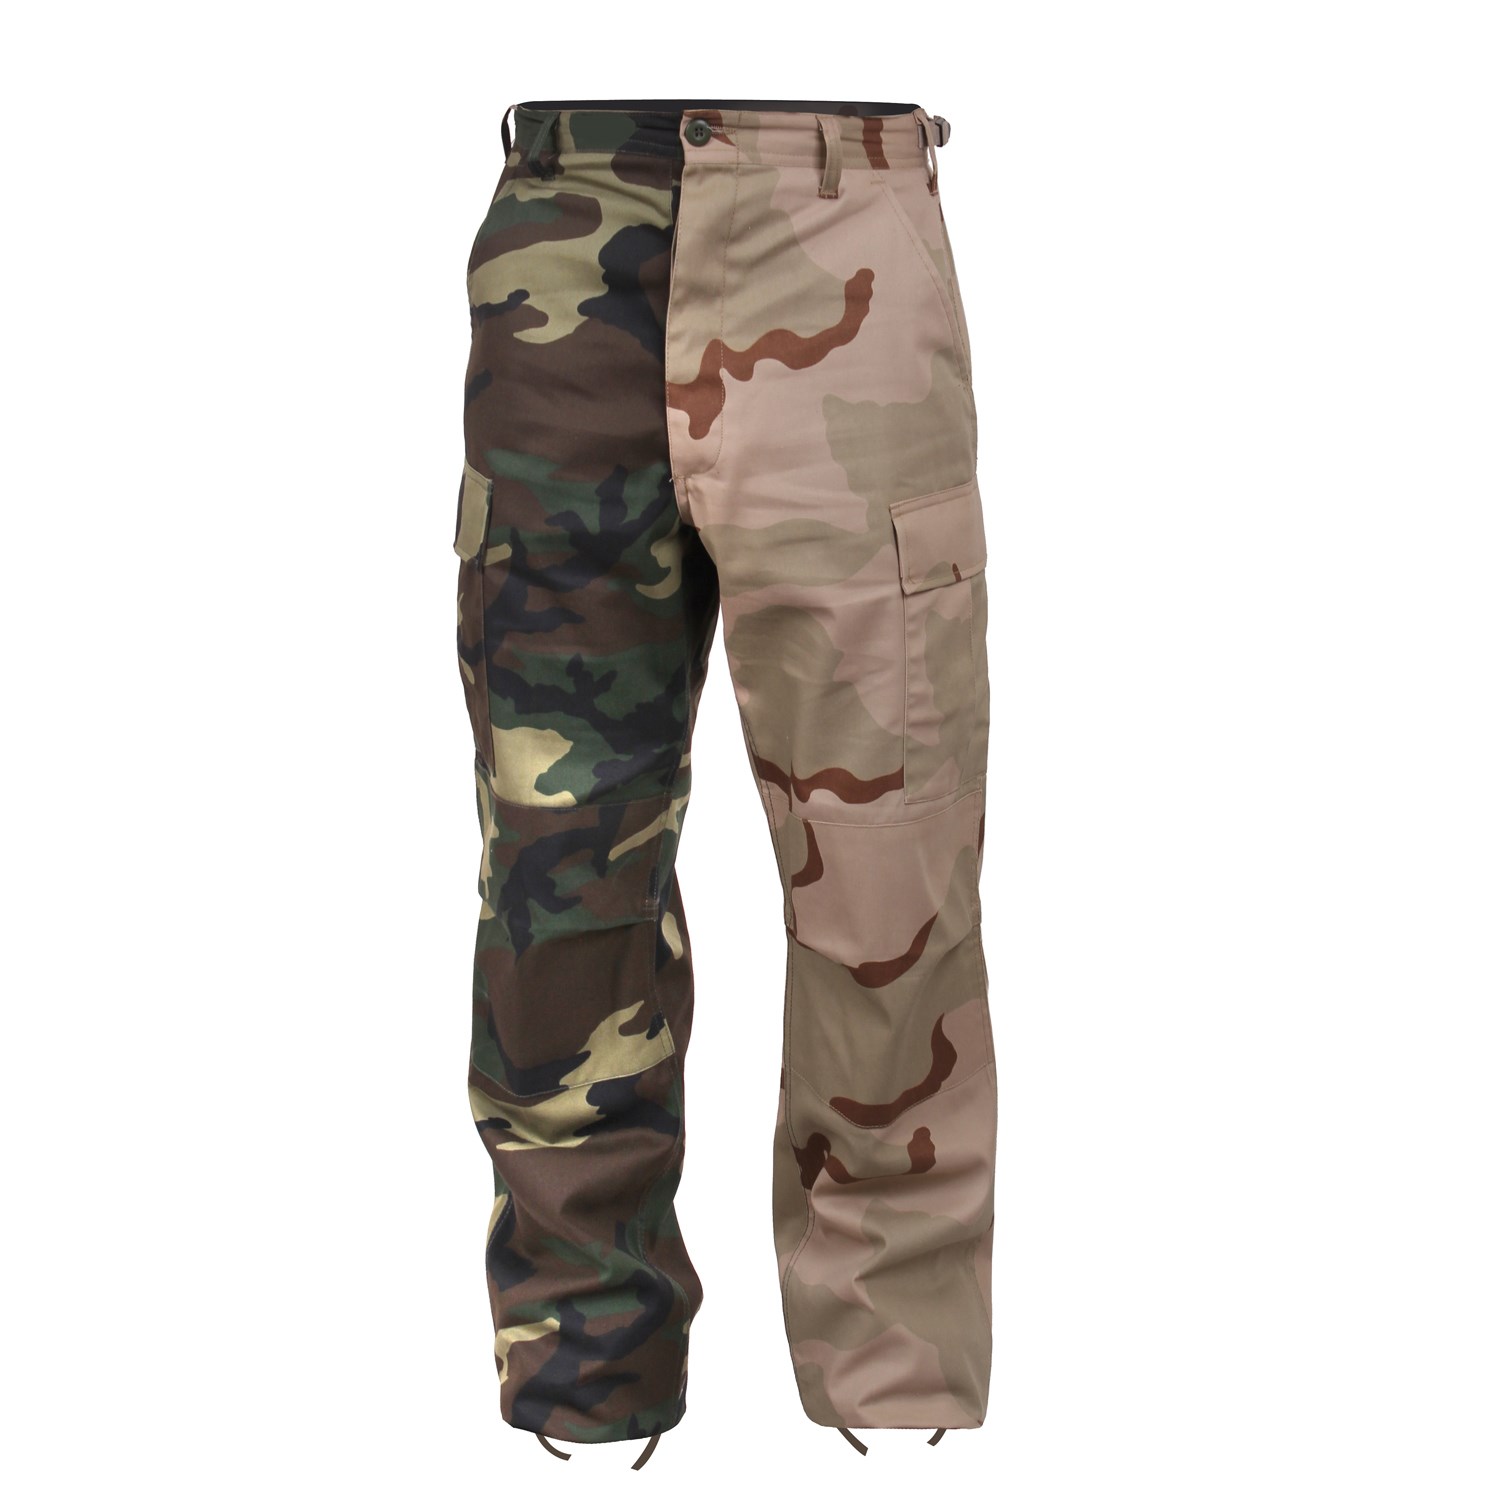 Rothco JR GI Desert Camo BDU Pants, Size: 2, New! – Military